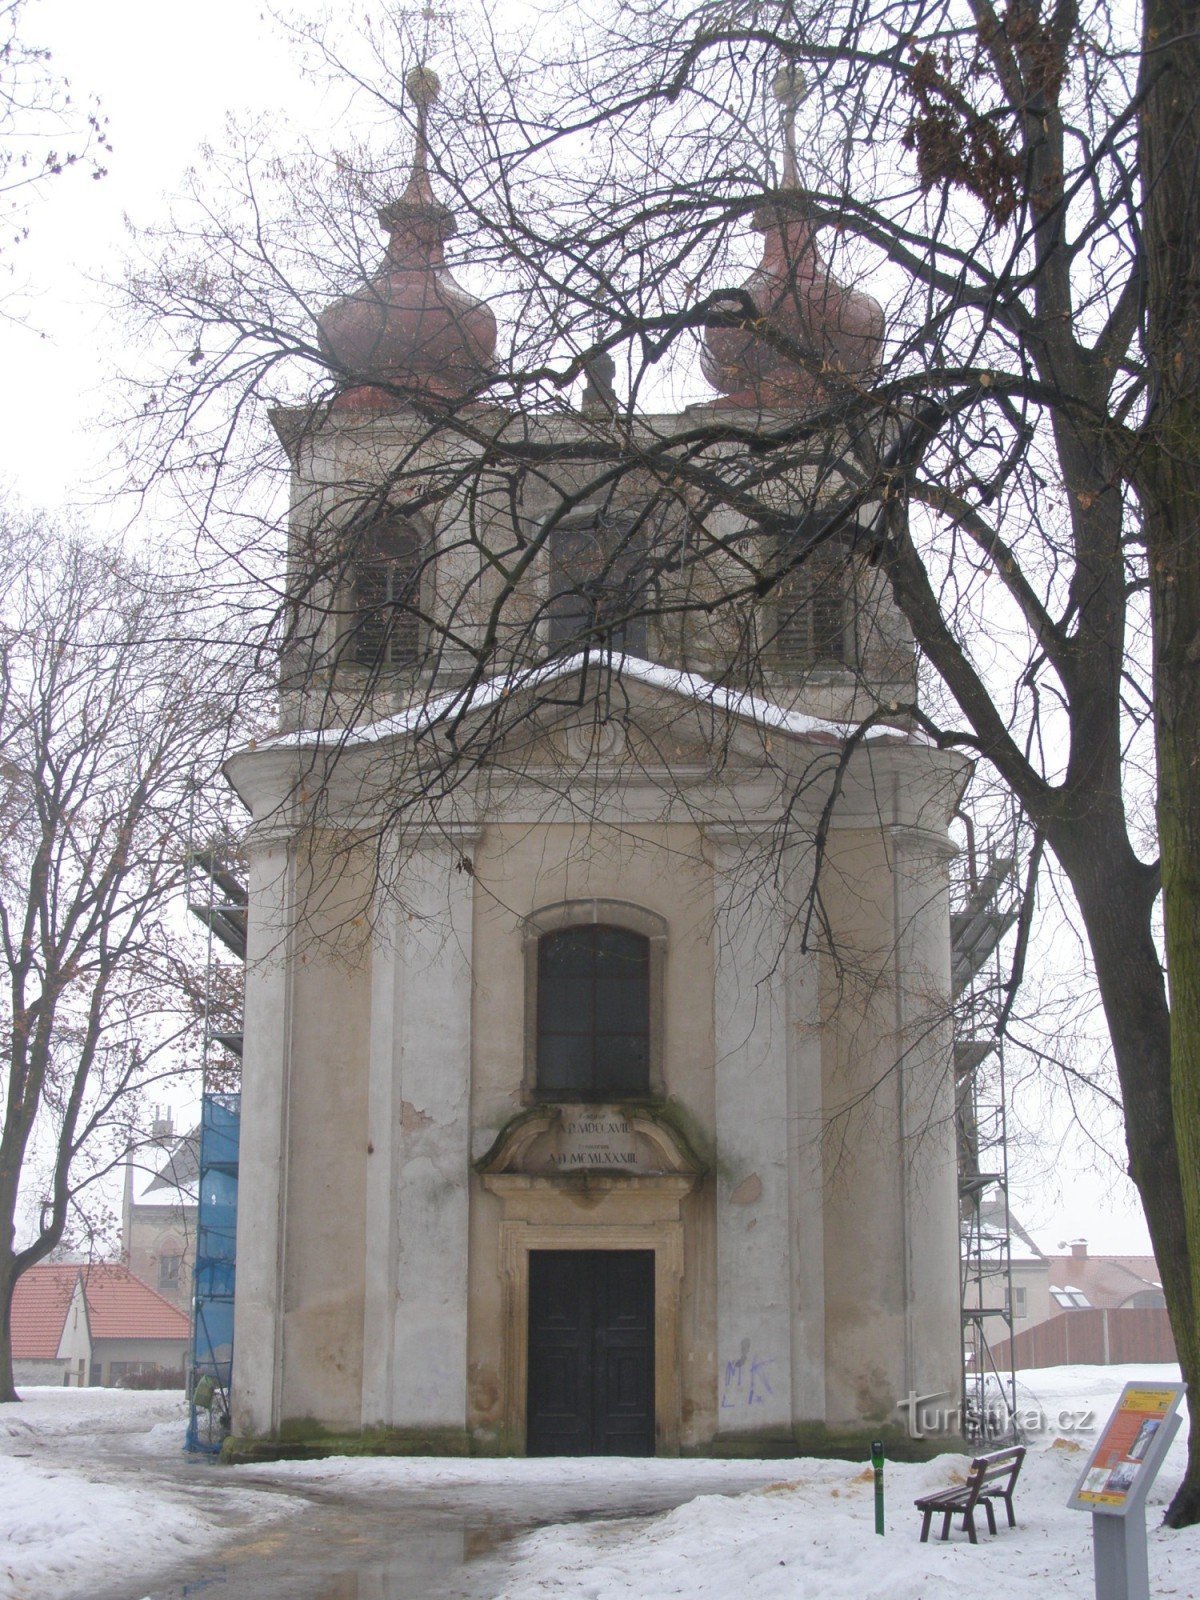 Nový Bydžov - Iglesia de la Santísima Trinidad